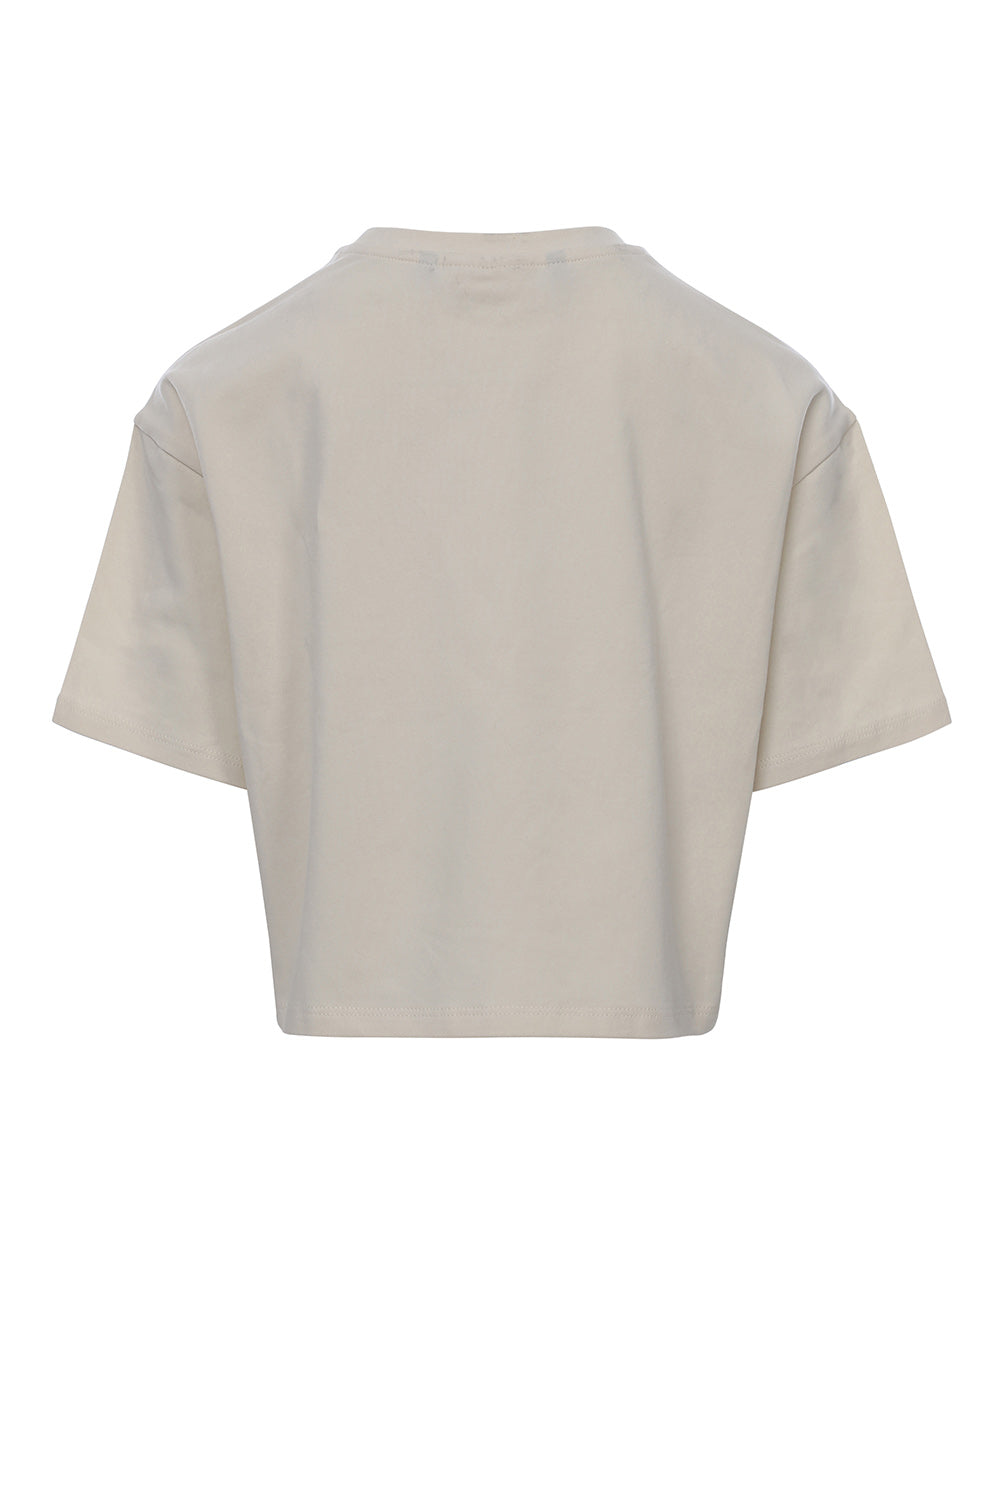 Meisjes Oversized Crop T-Shirt van LOOXS 10sixteen in de kleur Dove white in maat 176.